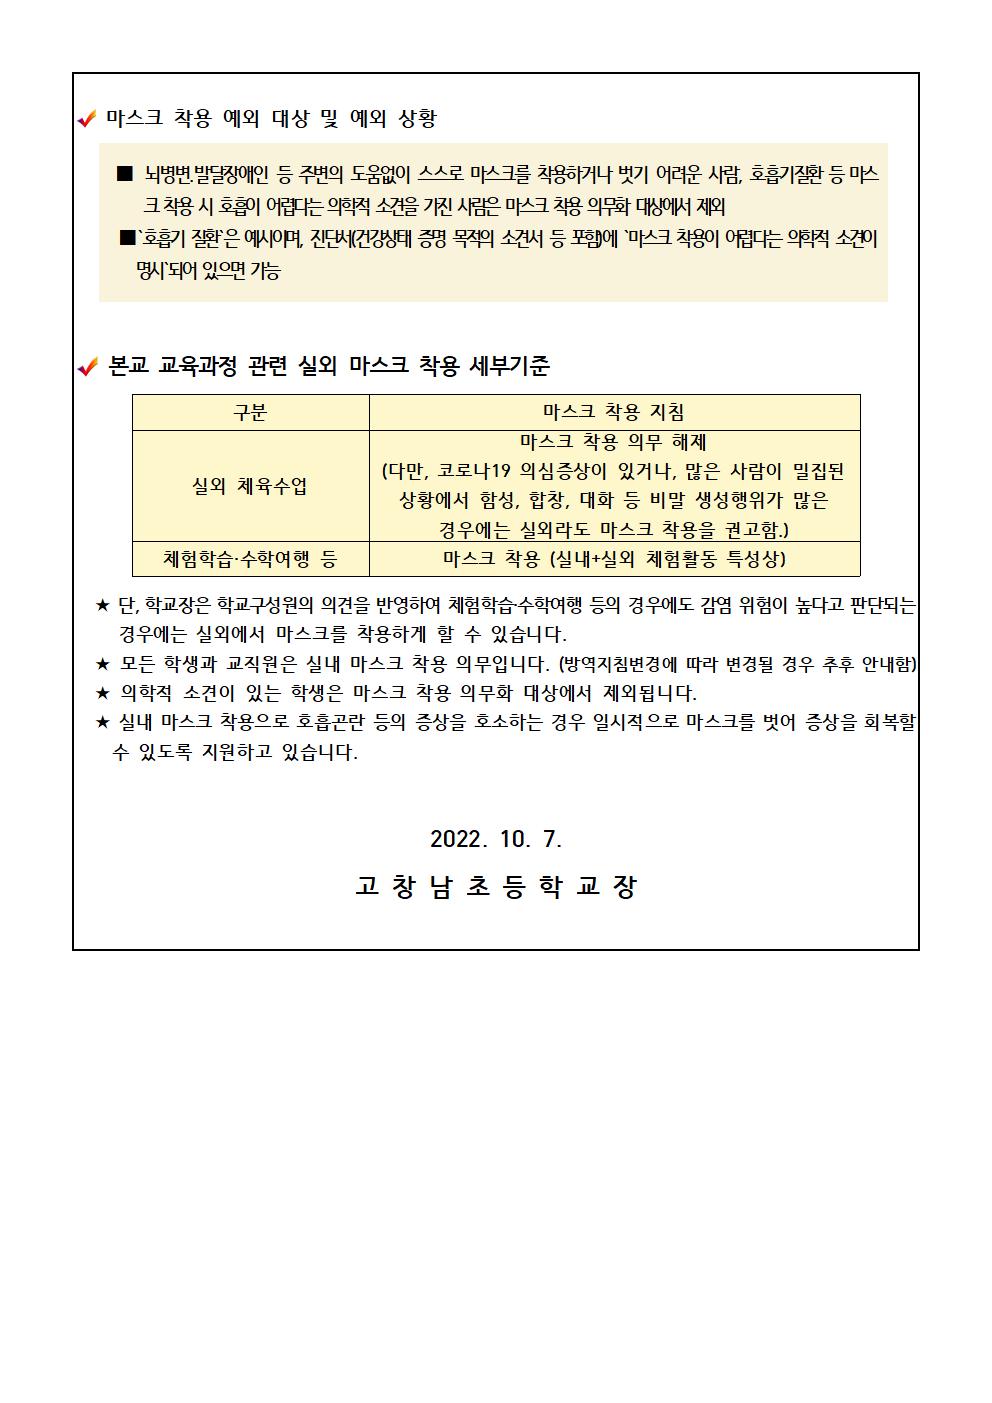 코로나19 감염예방 관리지침8-1판) 개정사항 안내(고창남초)002